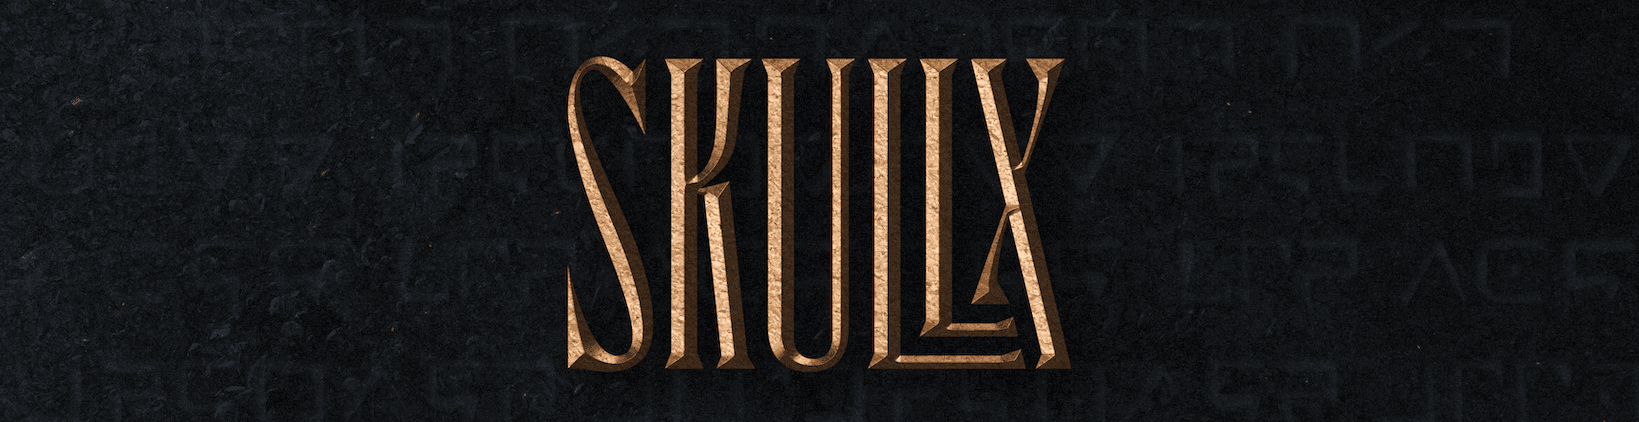 Skullx